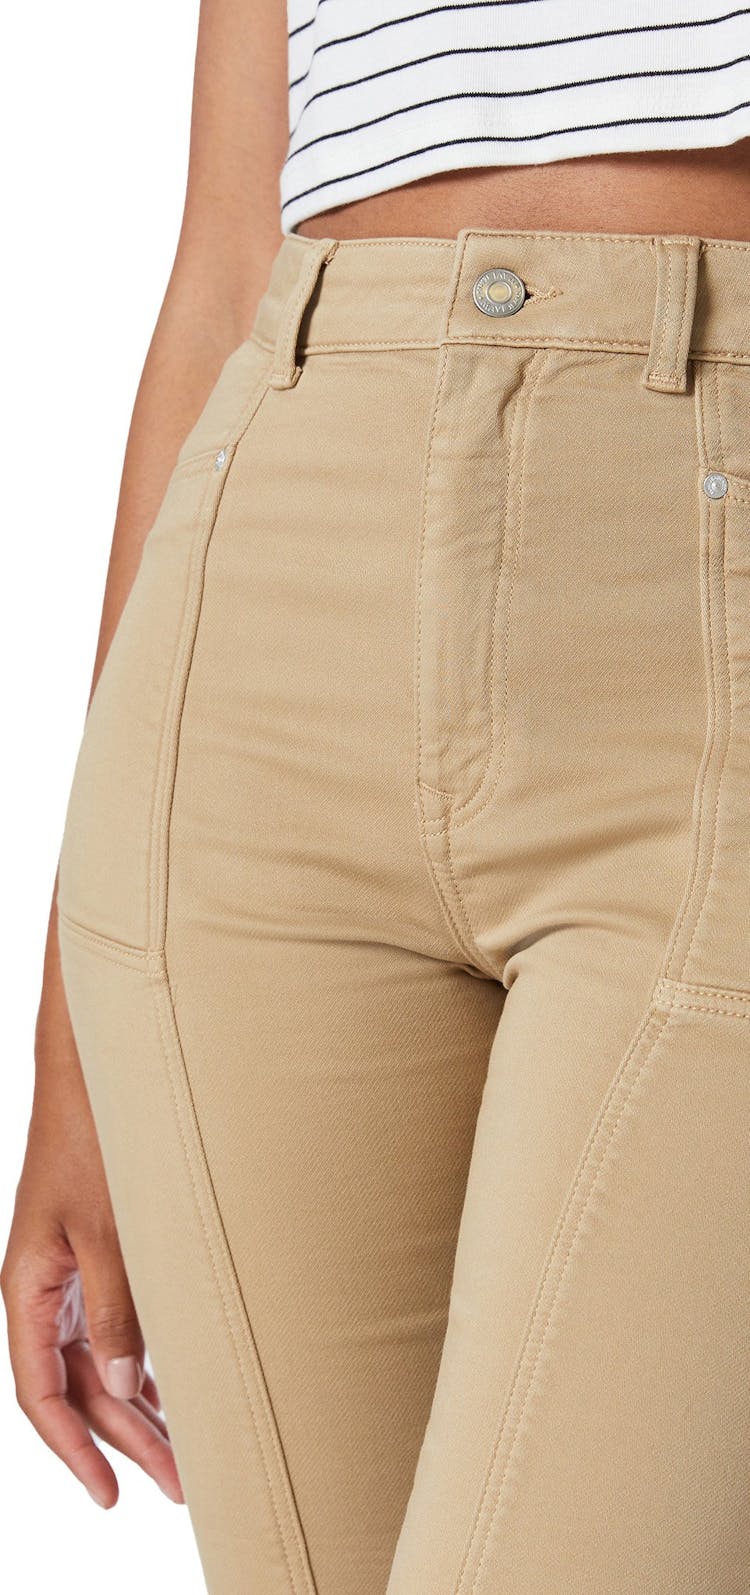 Numéro de l'image de la galerie de produits 3 pour le produit Pantalon jogger étroit Cournstalk Casual Comfort Anna - Femme